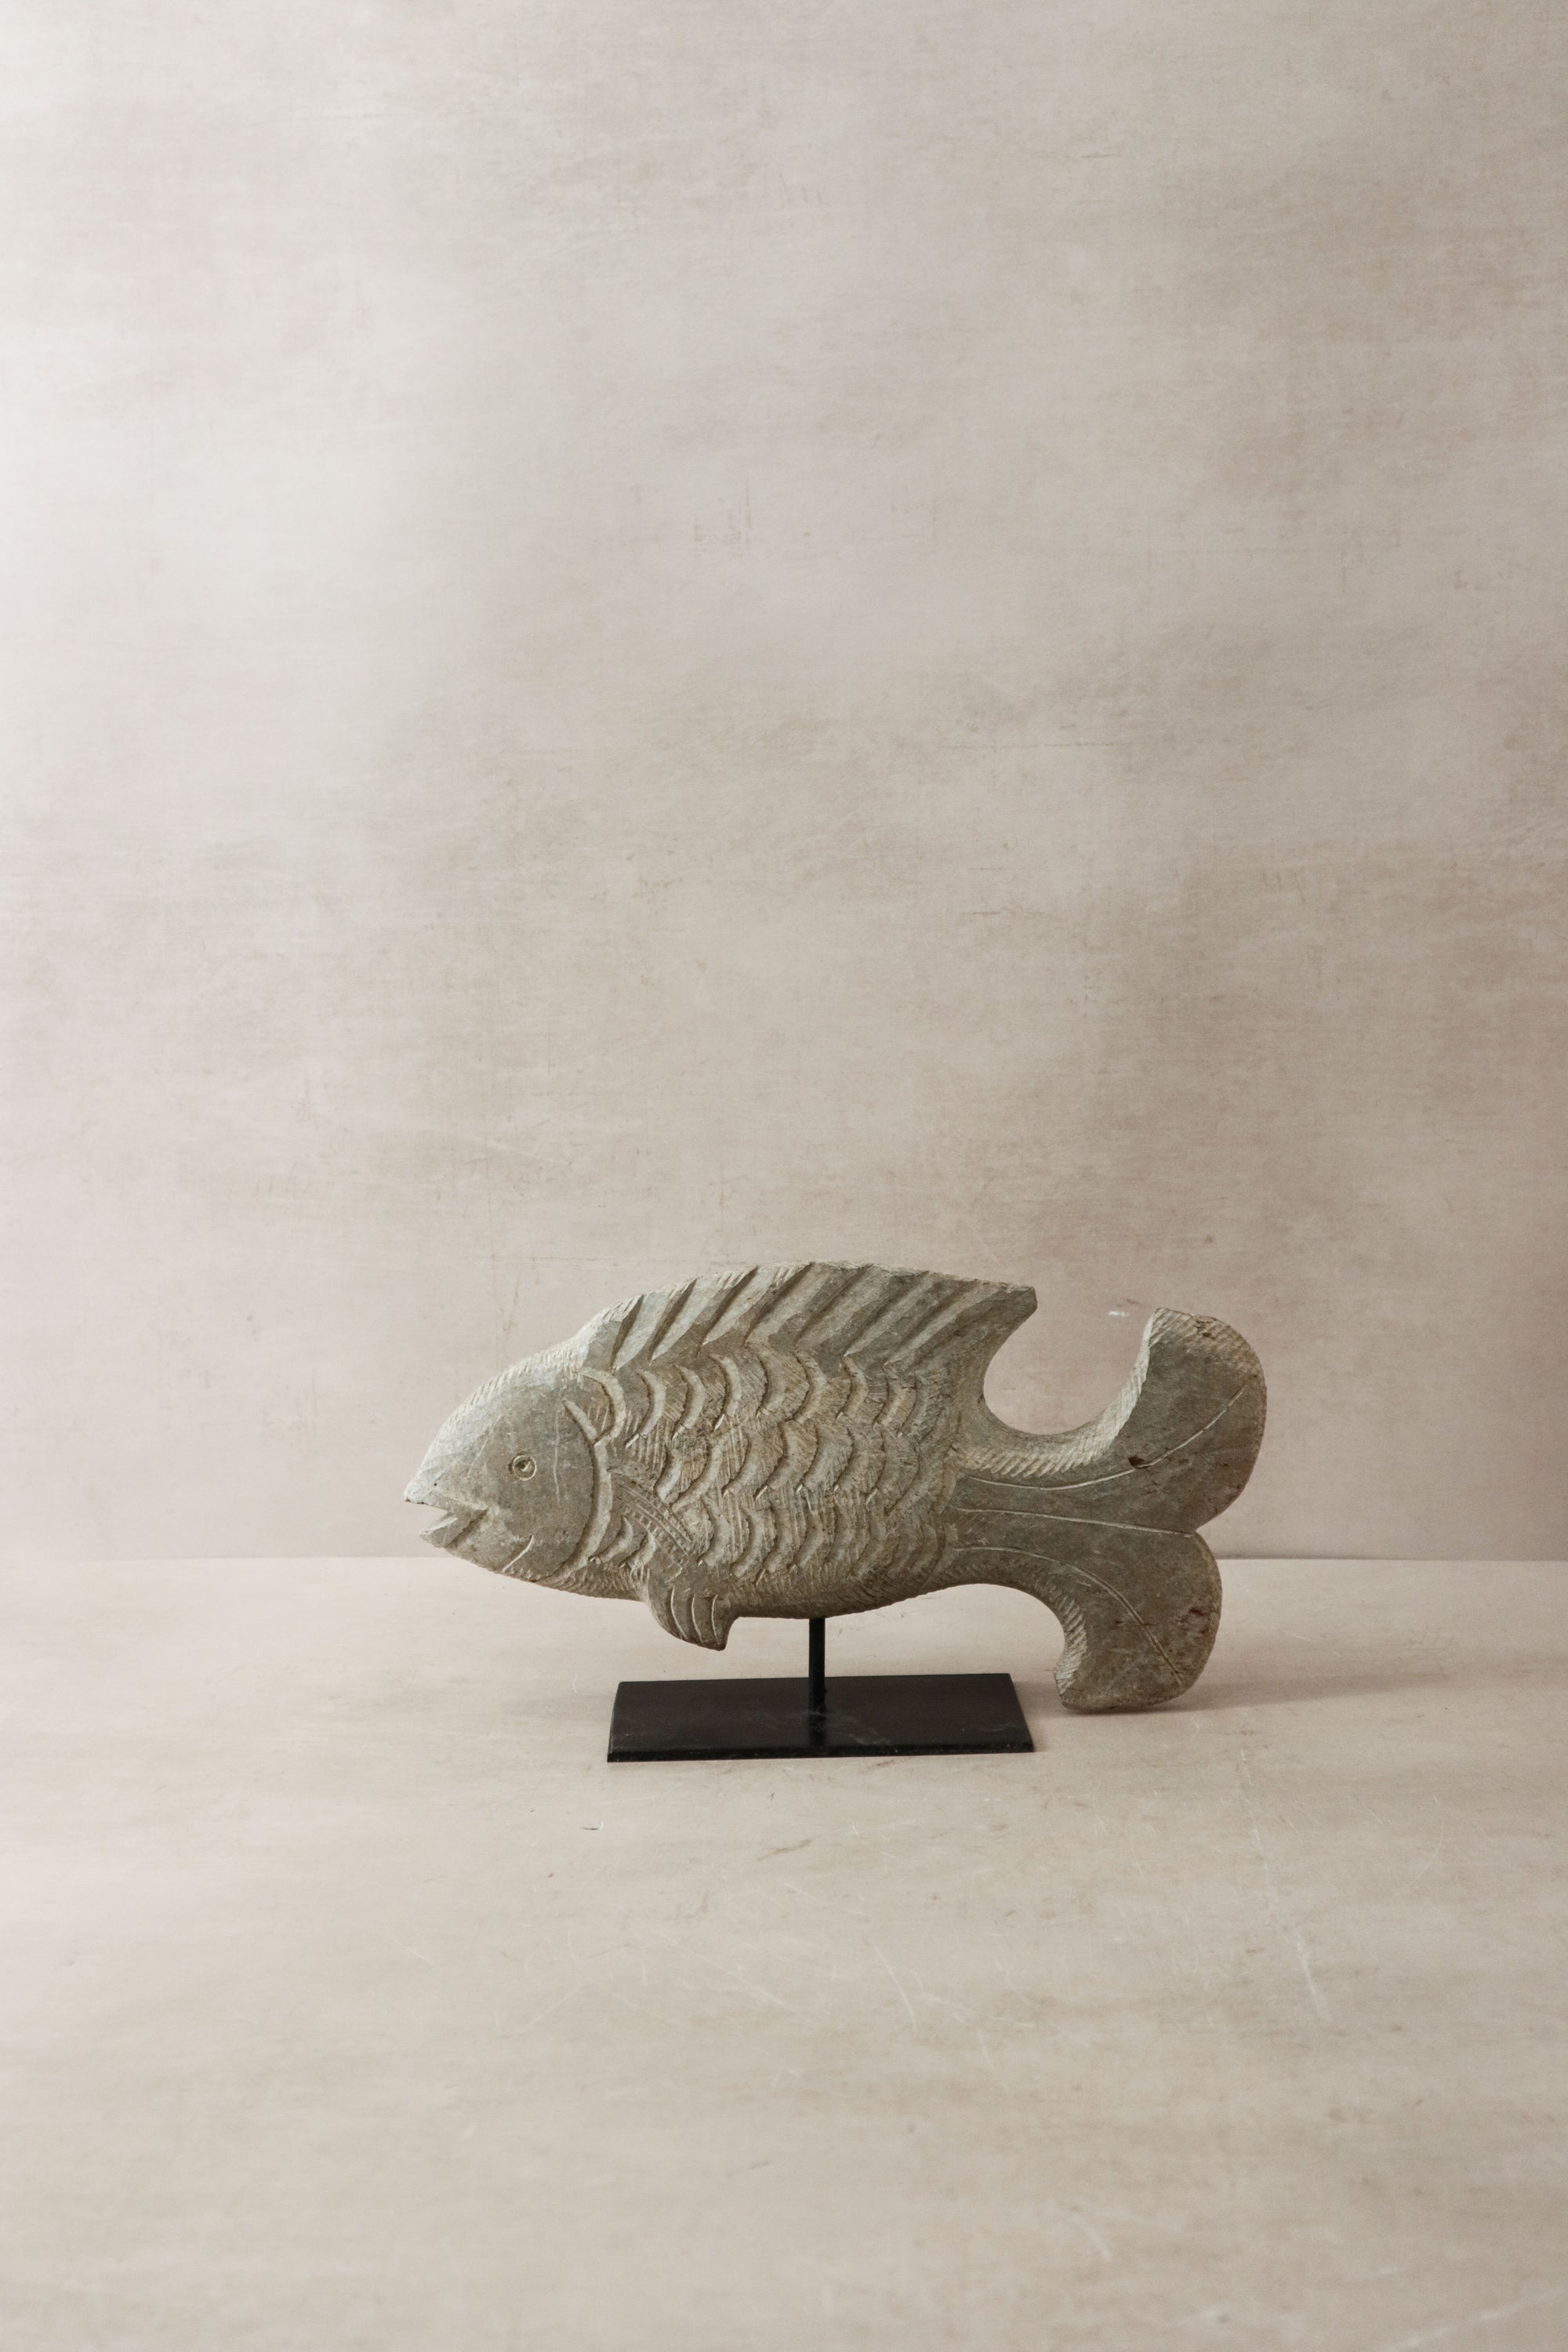 Stone Fish Sculpture - Zimbabwe - 36.2